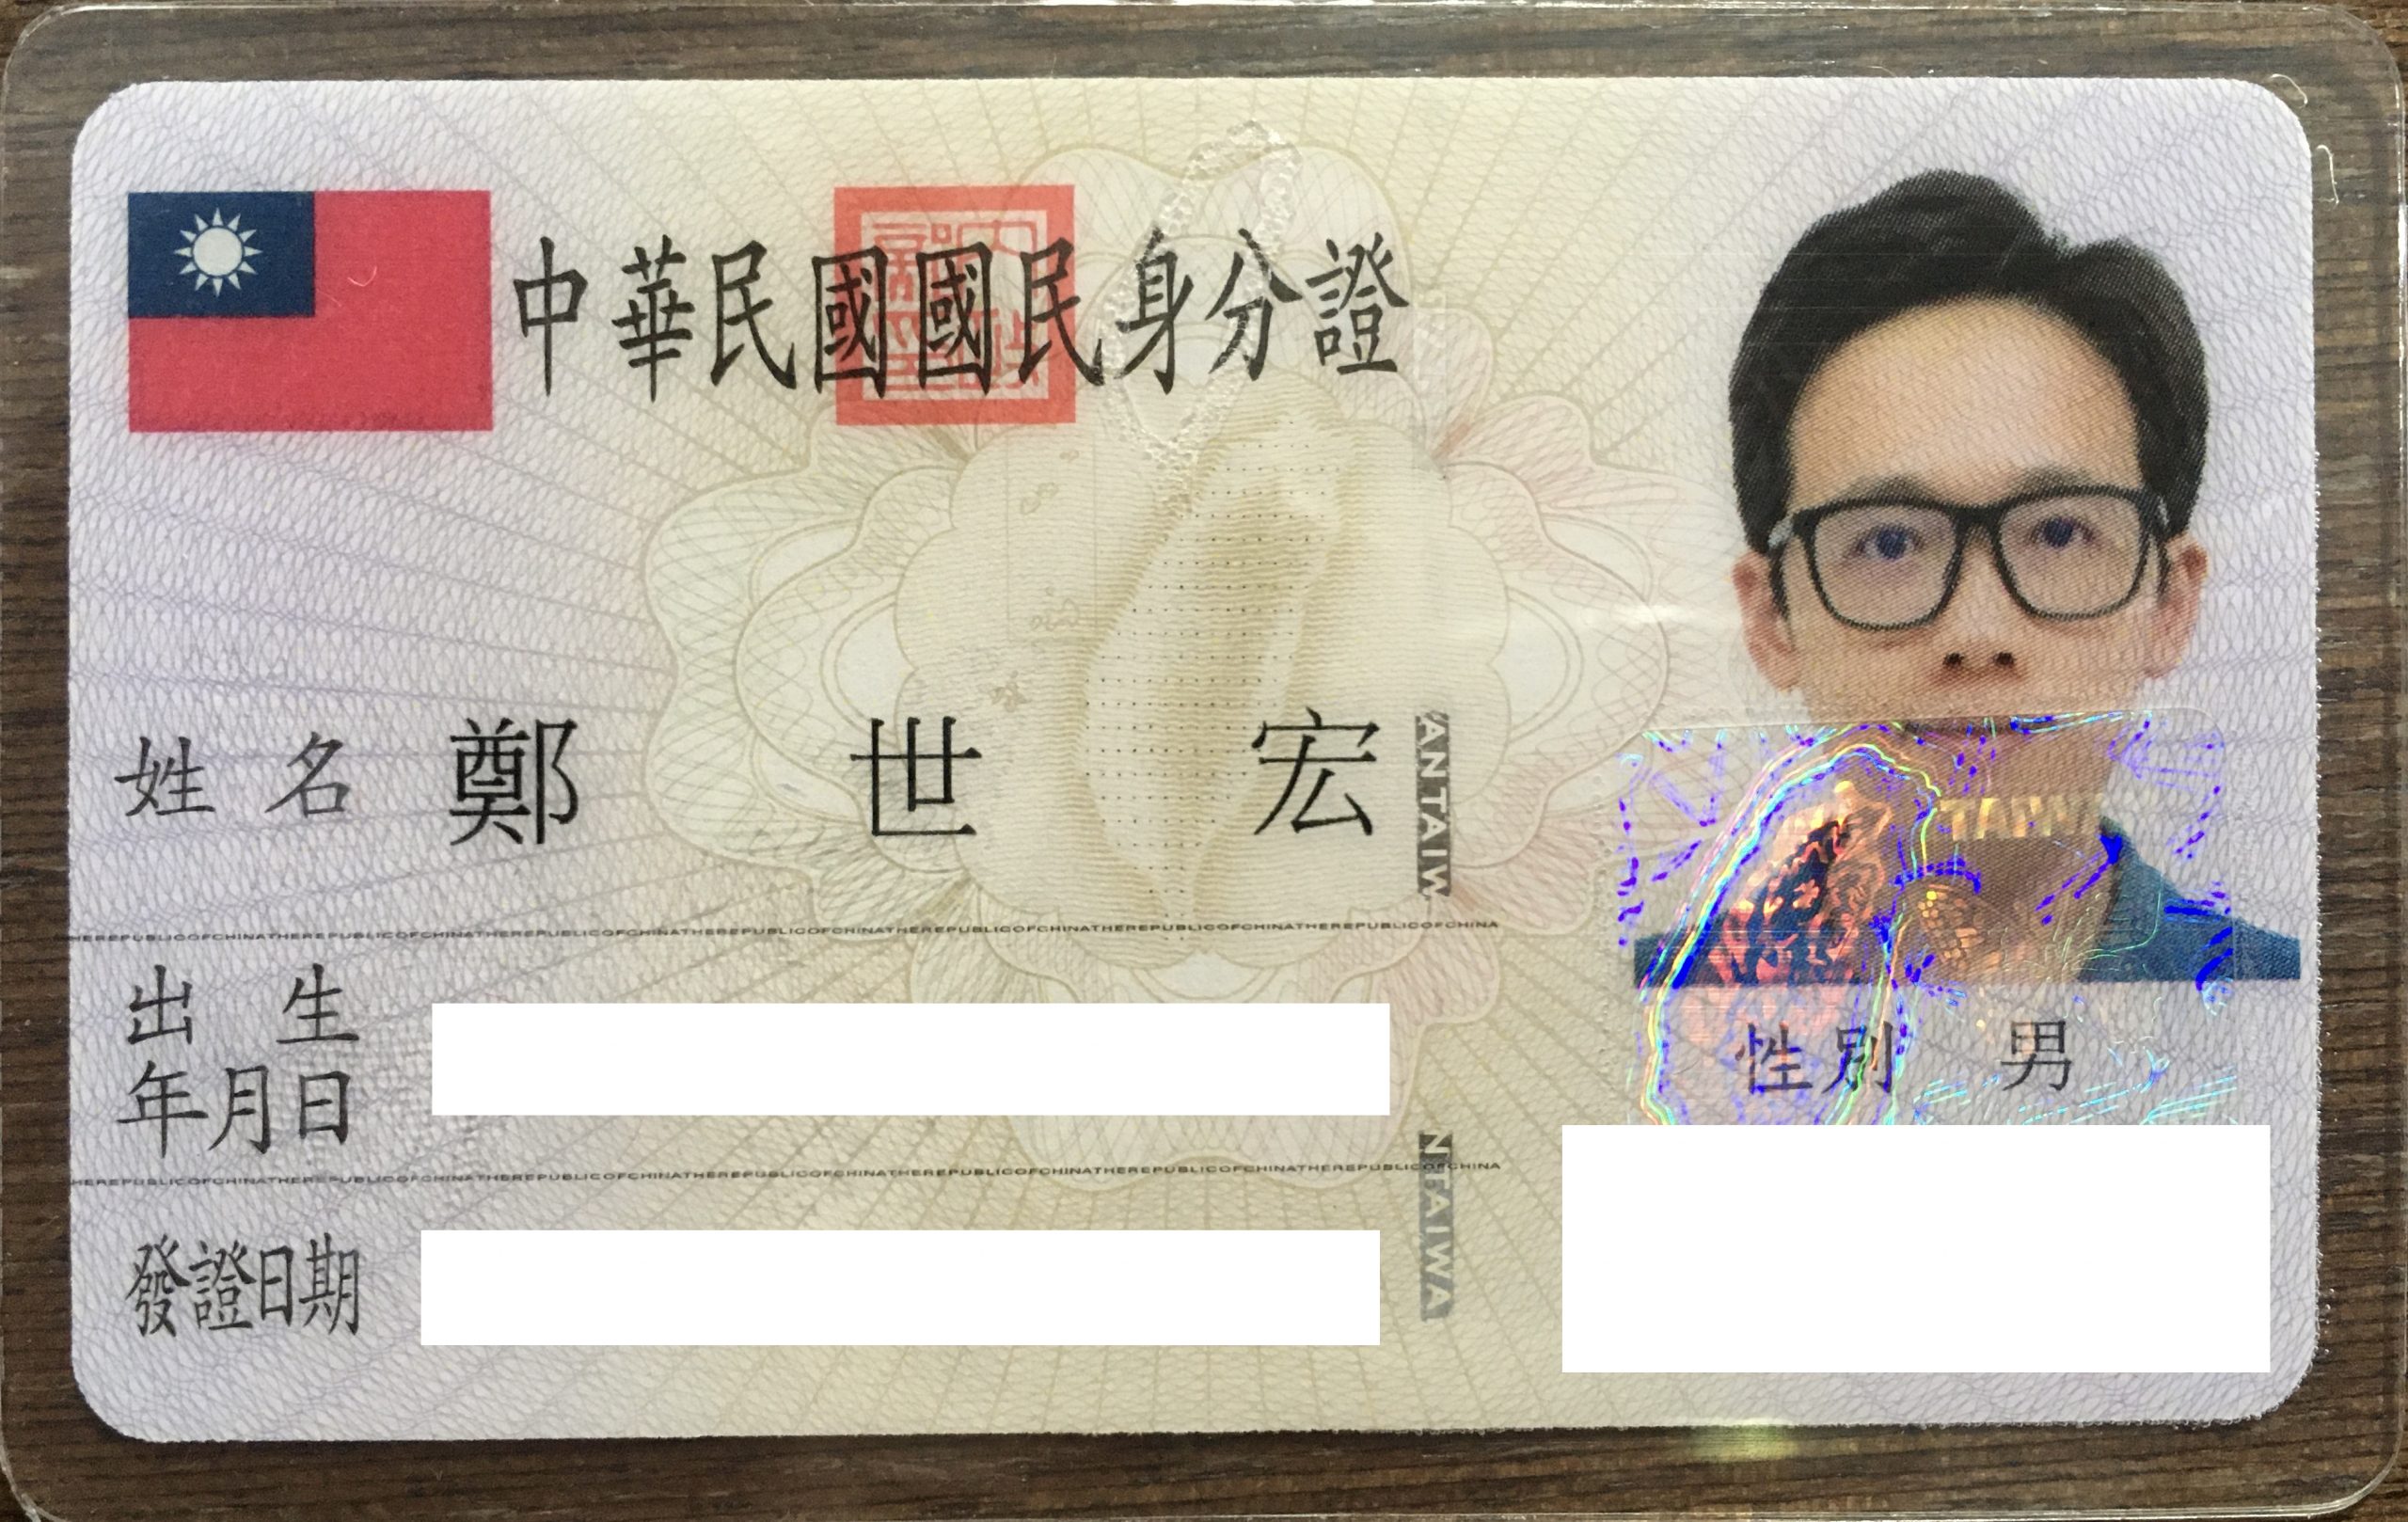 生活經驗分享 身分證 申辦 換證 照片自己上傳 國民身分證影像上傳服務 傻熊看世界